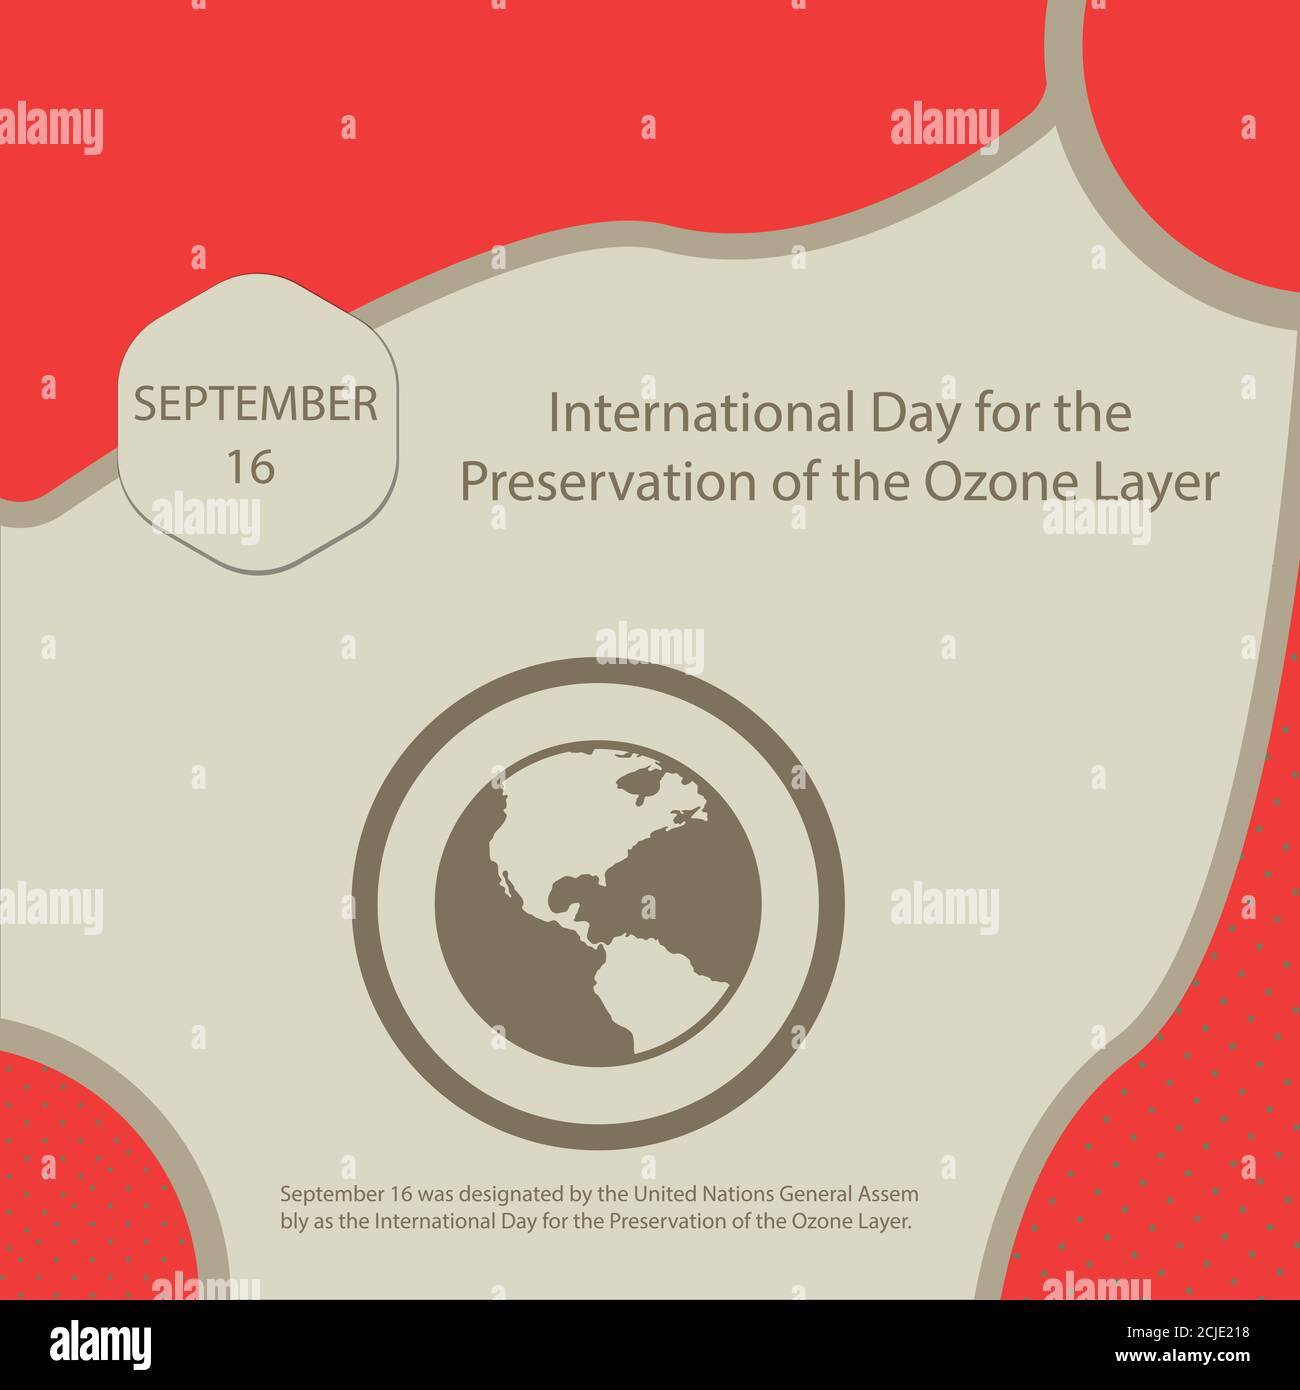 El 16 de septiembre fue designado por la Asamblea General de las Naciones Unidas como el día Internacional para la preservación de la capa de Ozono. Ilustración del Vector